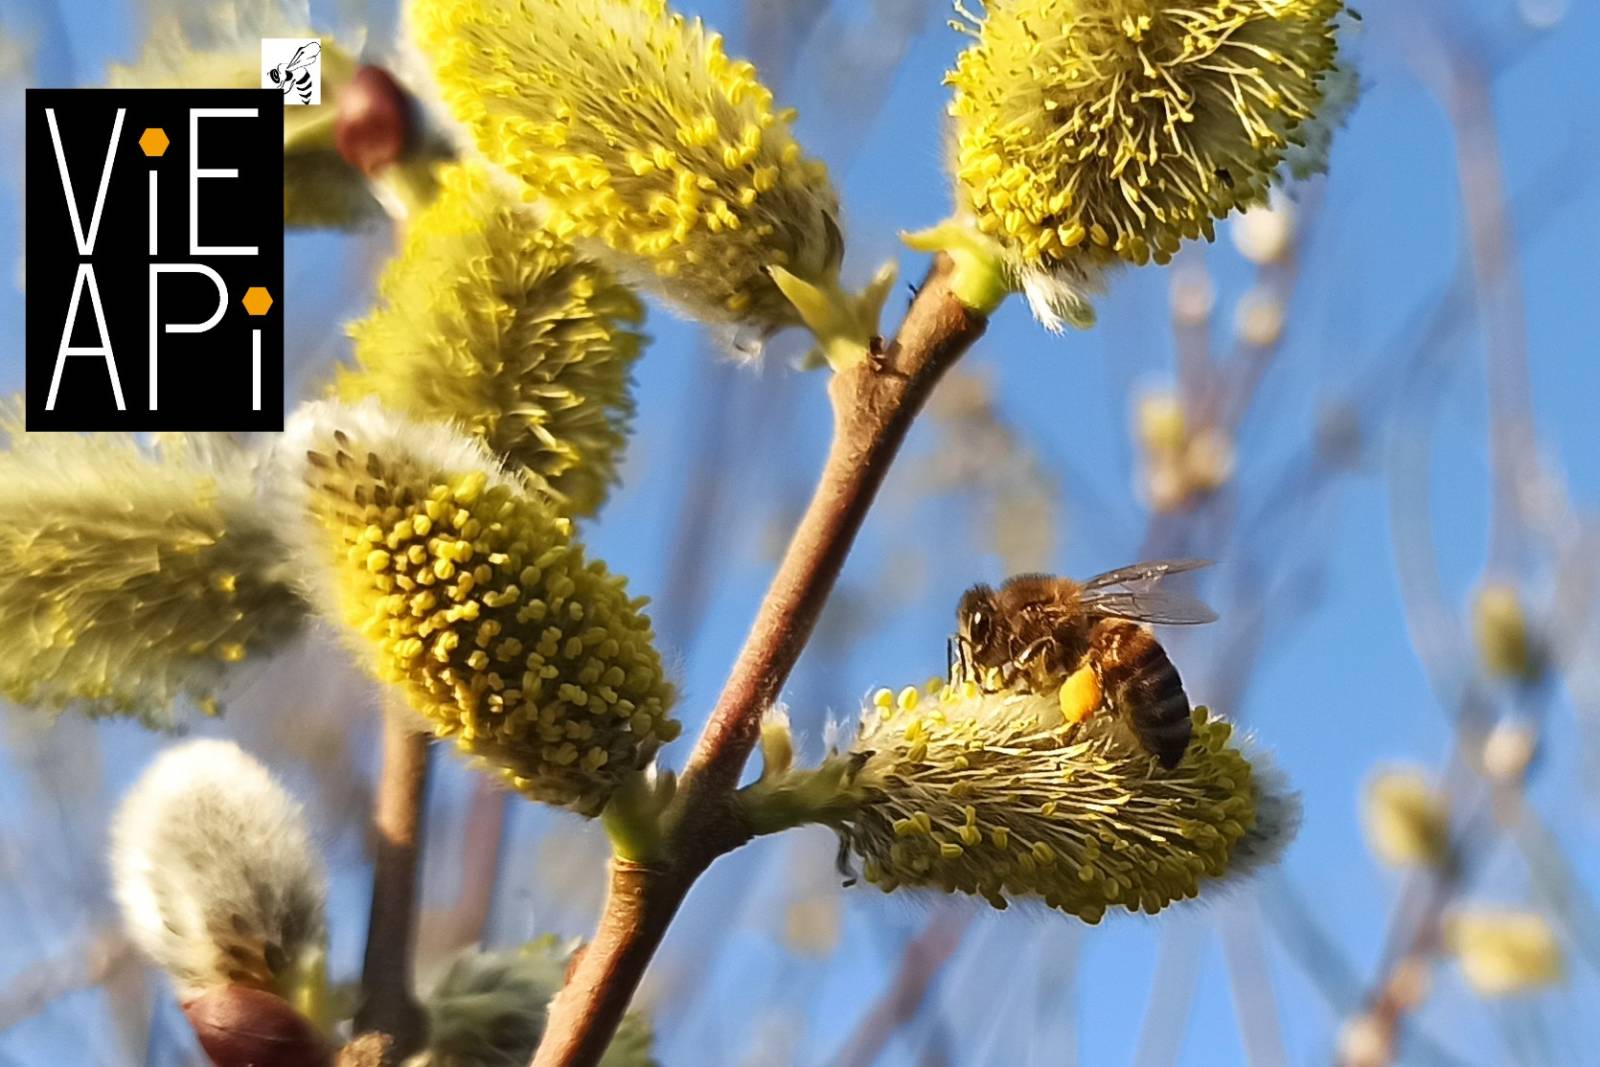 Miel : un apiculteur caladois? Venez le découvrir à Saveur Nature Villefranche-sur-Saône